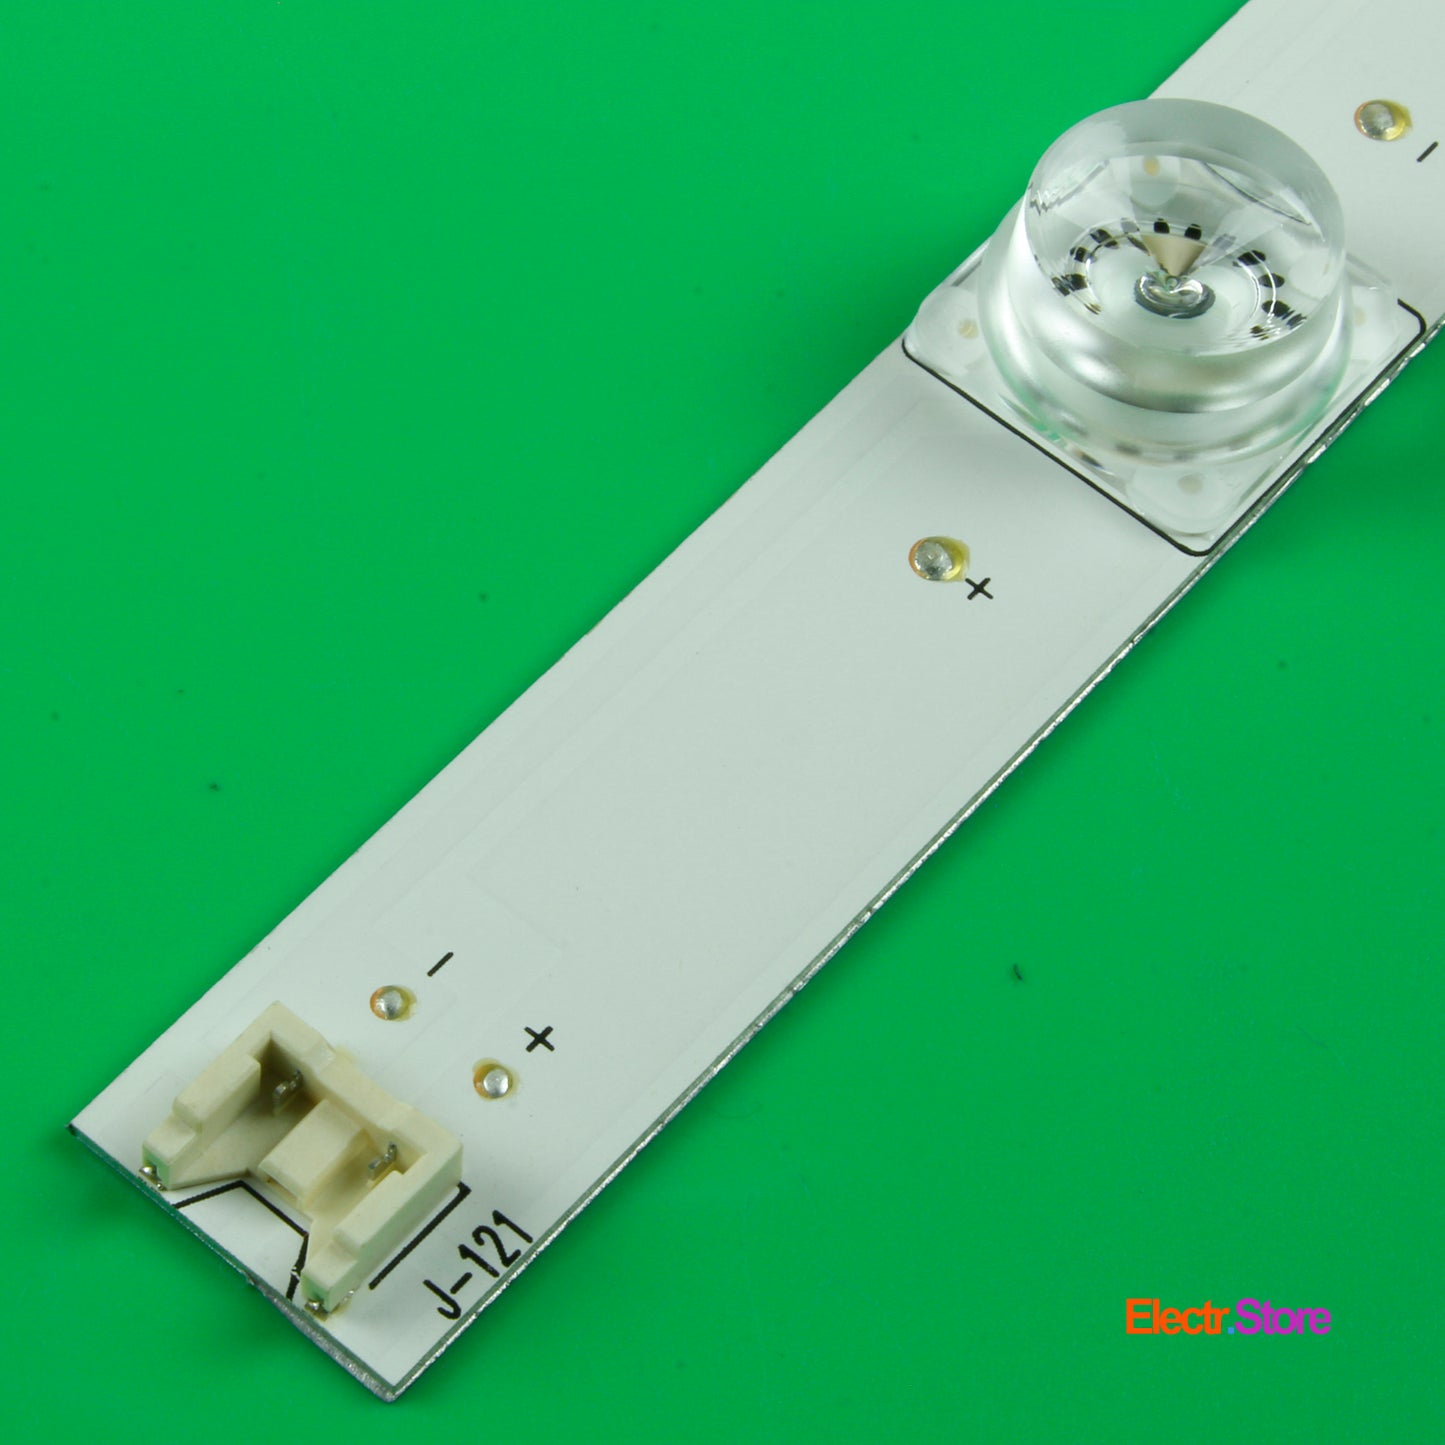 LED Backlight Strip Kits, Innotek DRT 3.0 32"_A/B Type Rev0.2, AGF78400001, 6916L-1974A/6916L-1975A (Square Pedstal, 3 pcs/kit), for TV 32" 32" DRT 3.0 32"_A/B Type Rev0.2 LED Backlights LG Electr.Store